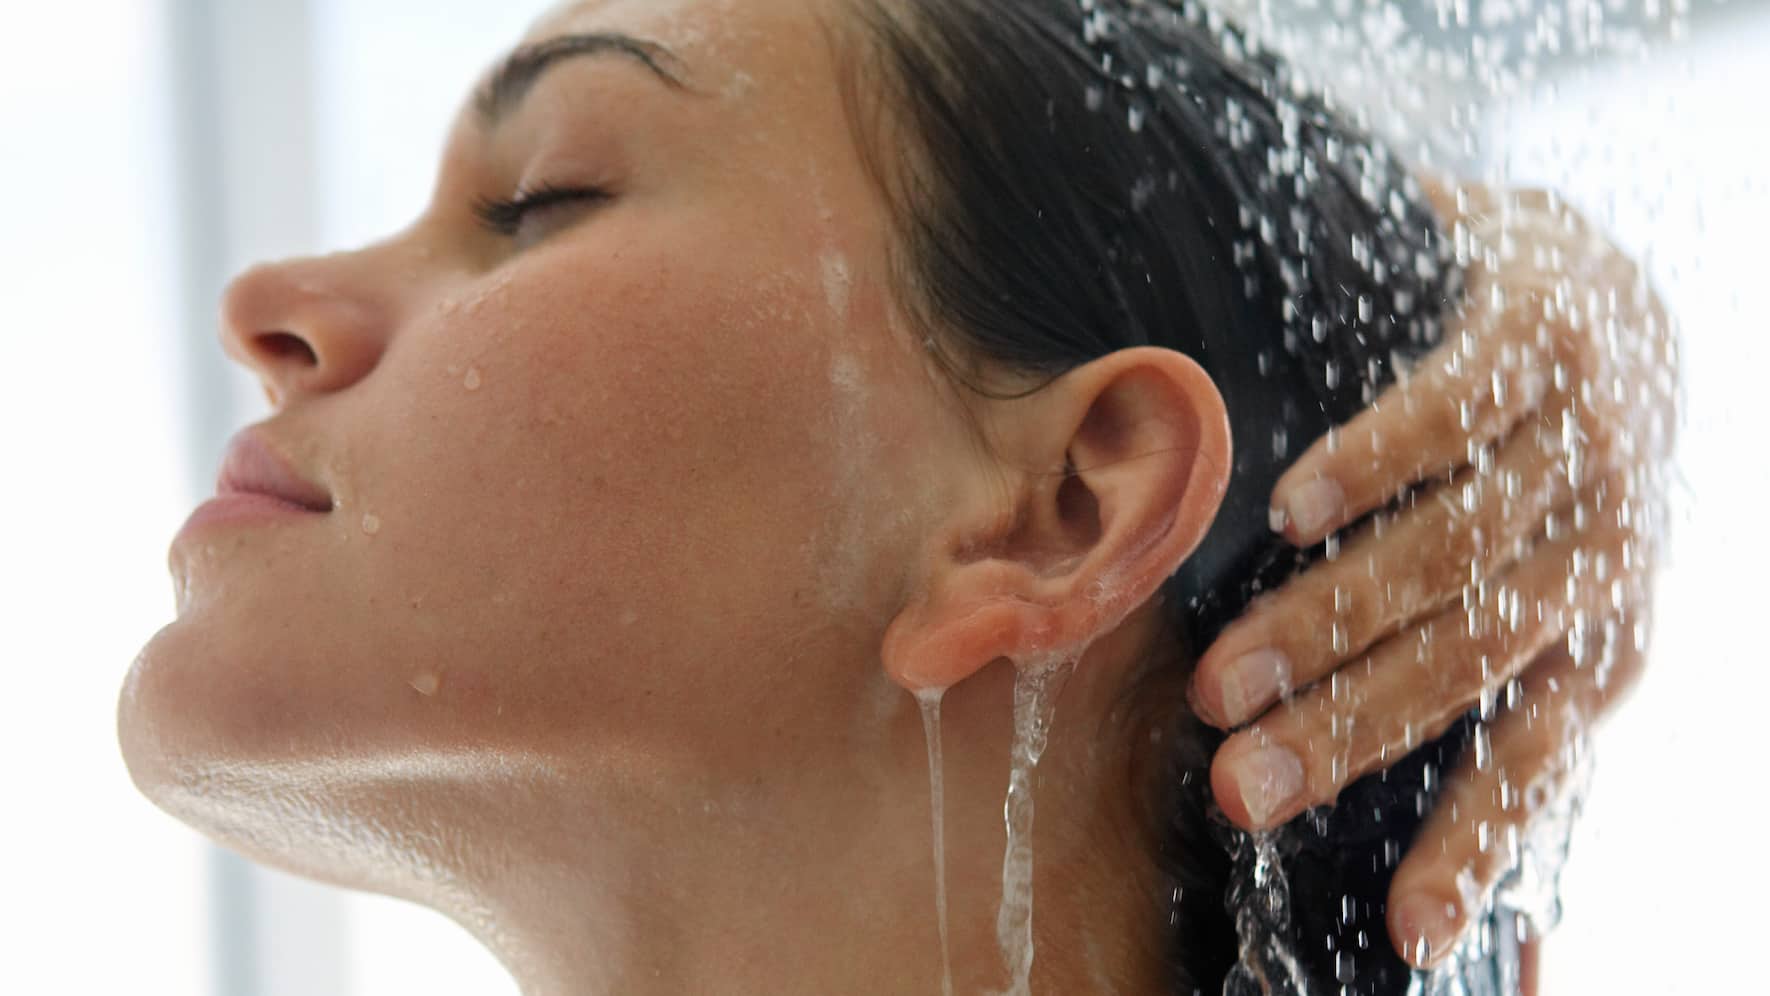 Shower face. Мытье волос. Под душем. Вода для ополаскивания волос. Девушка моет голову.